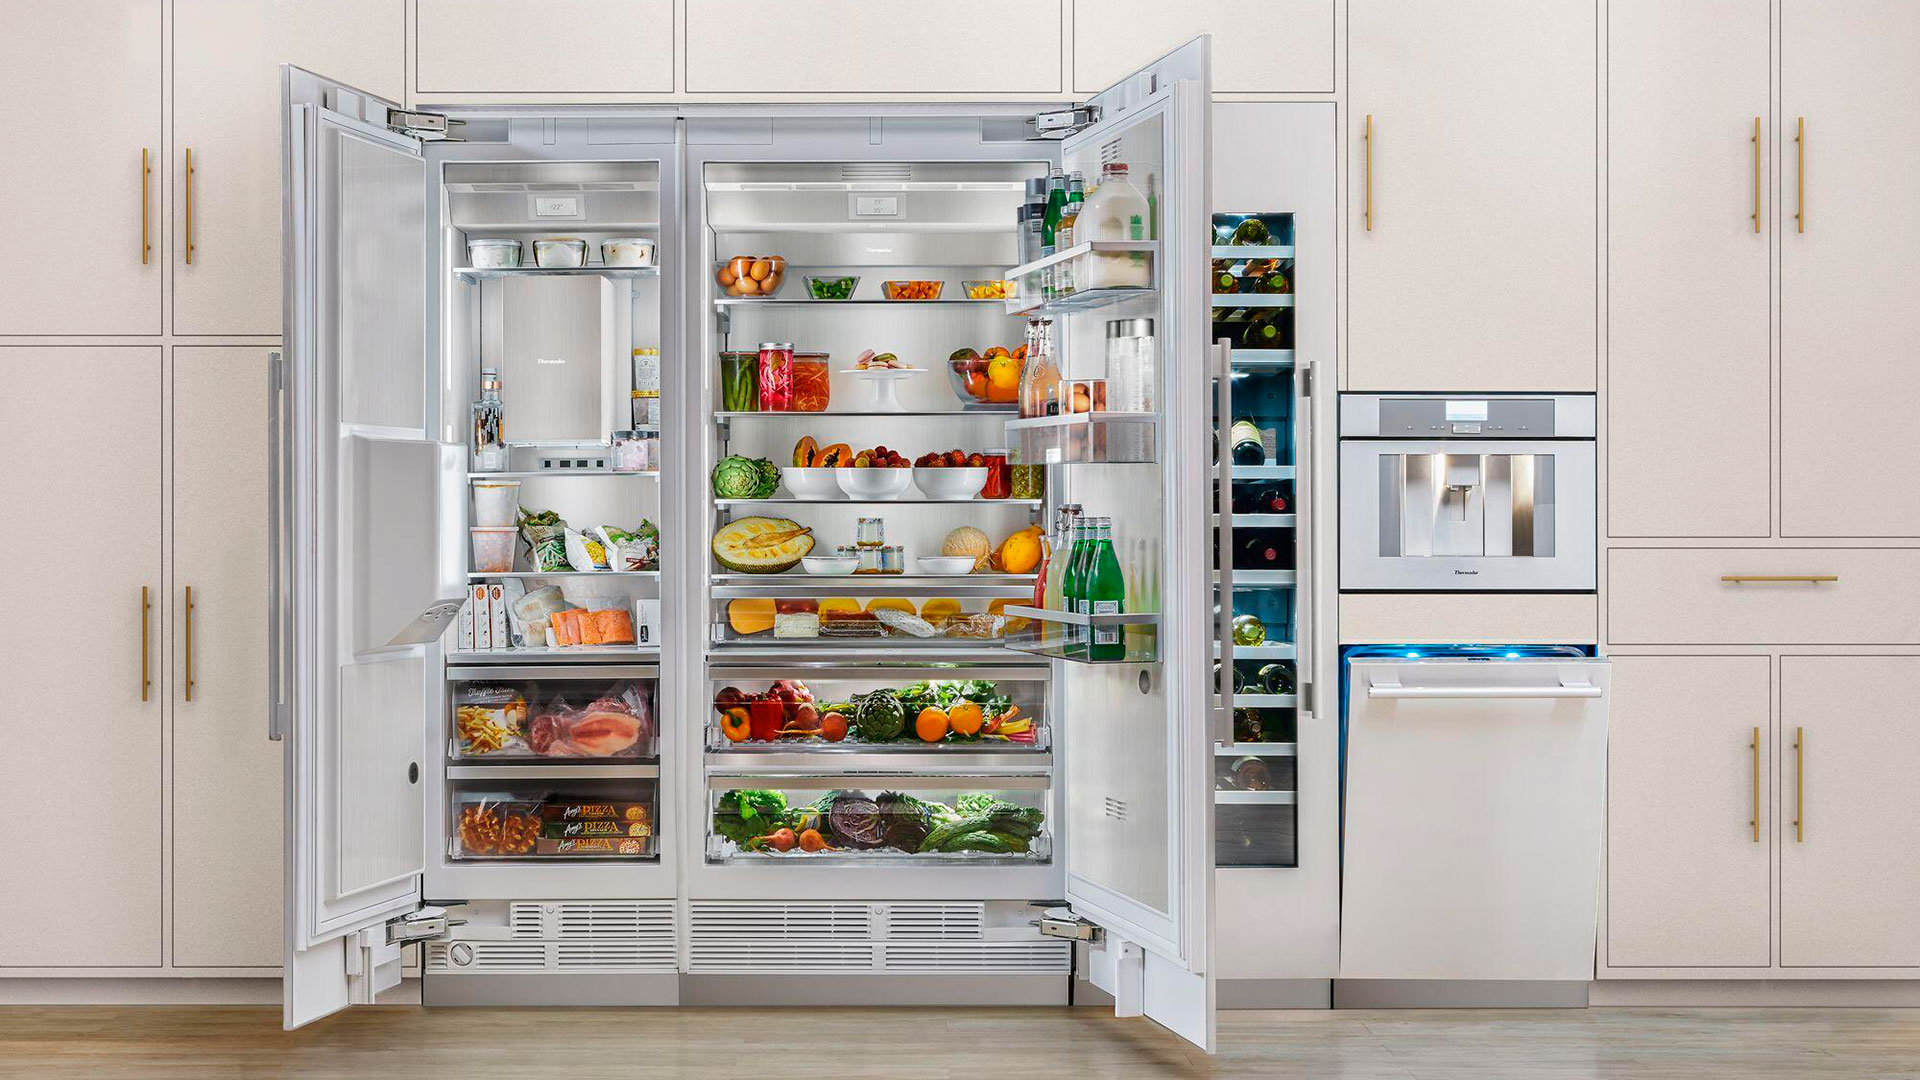 Thermador Refrigerator Repair | Thermador Appliance Repair Experts